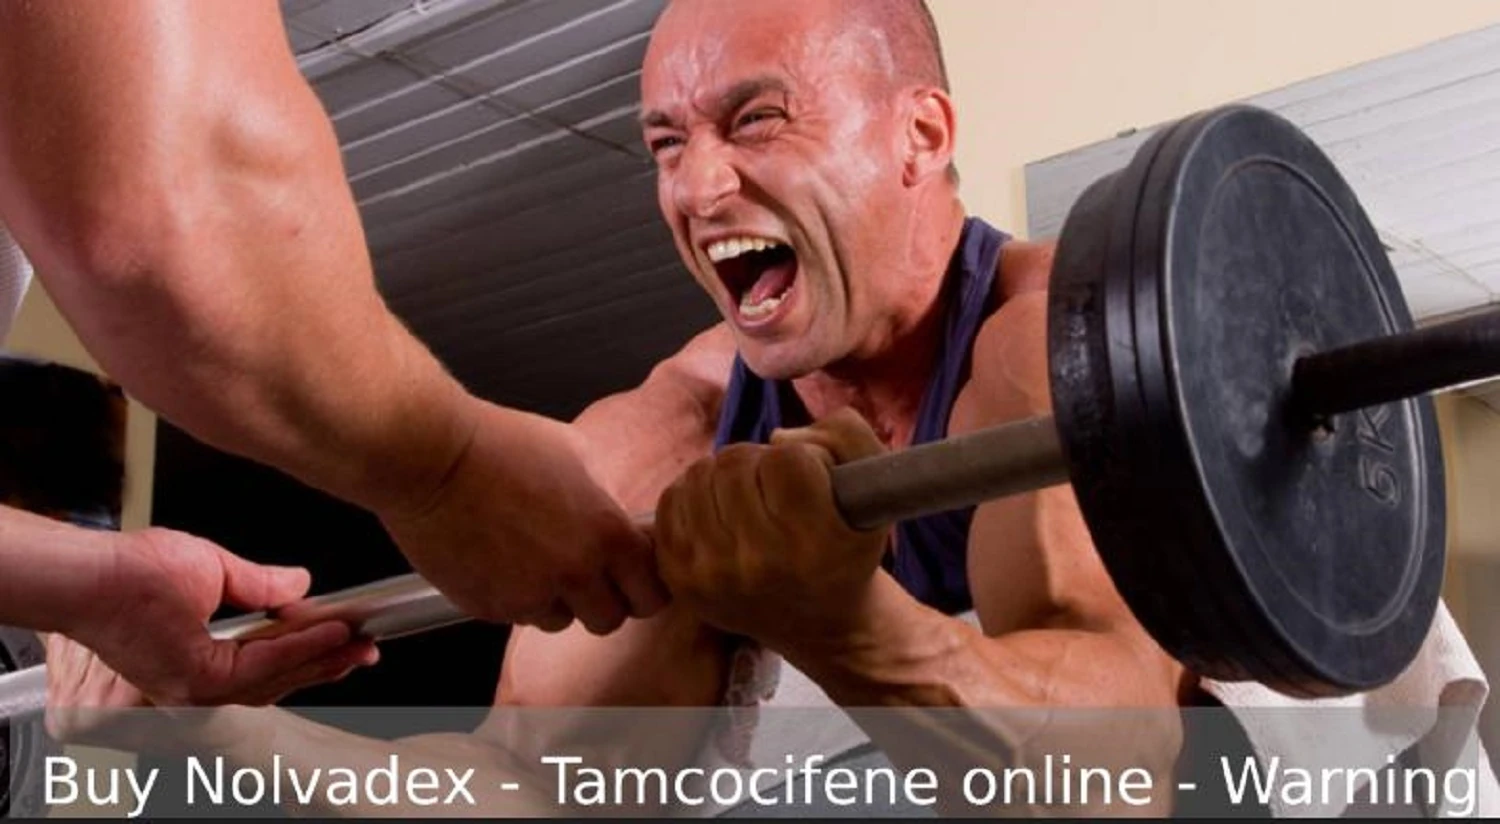 Buy Nolvadex online warning